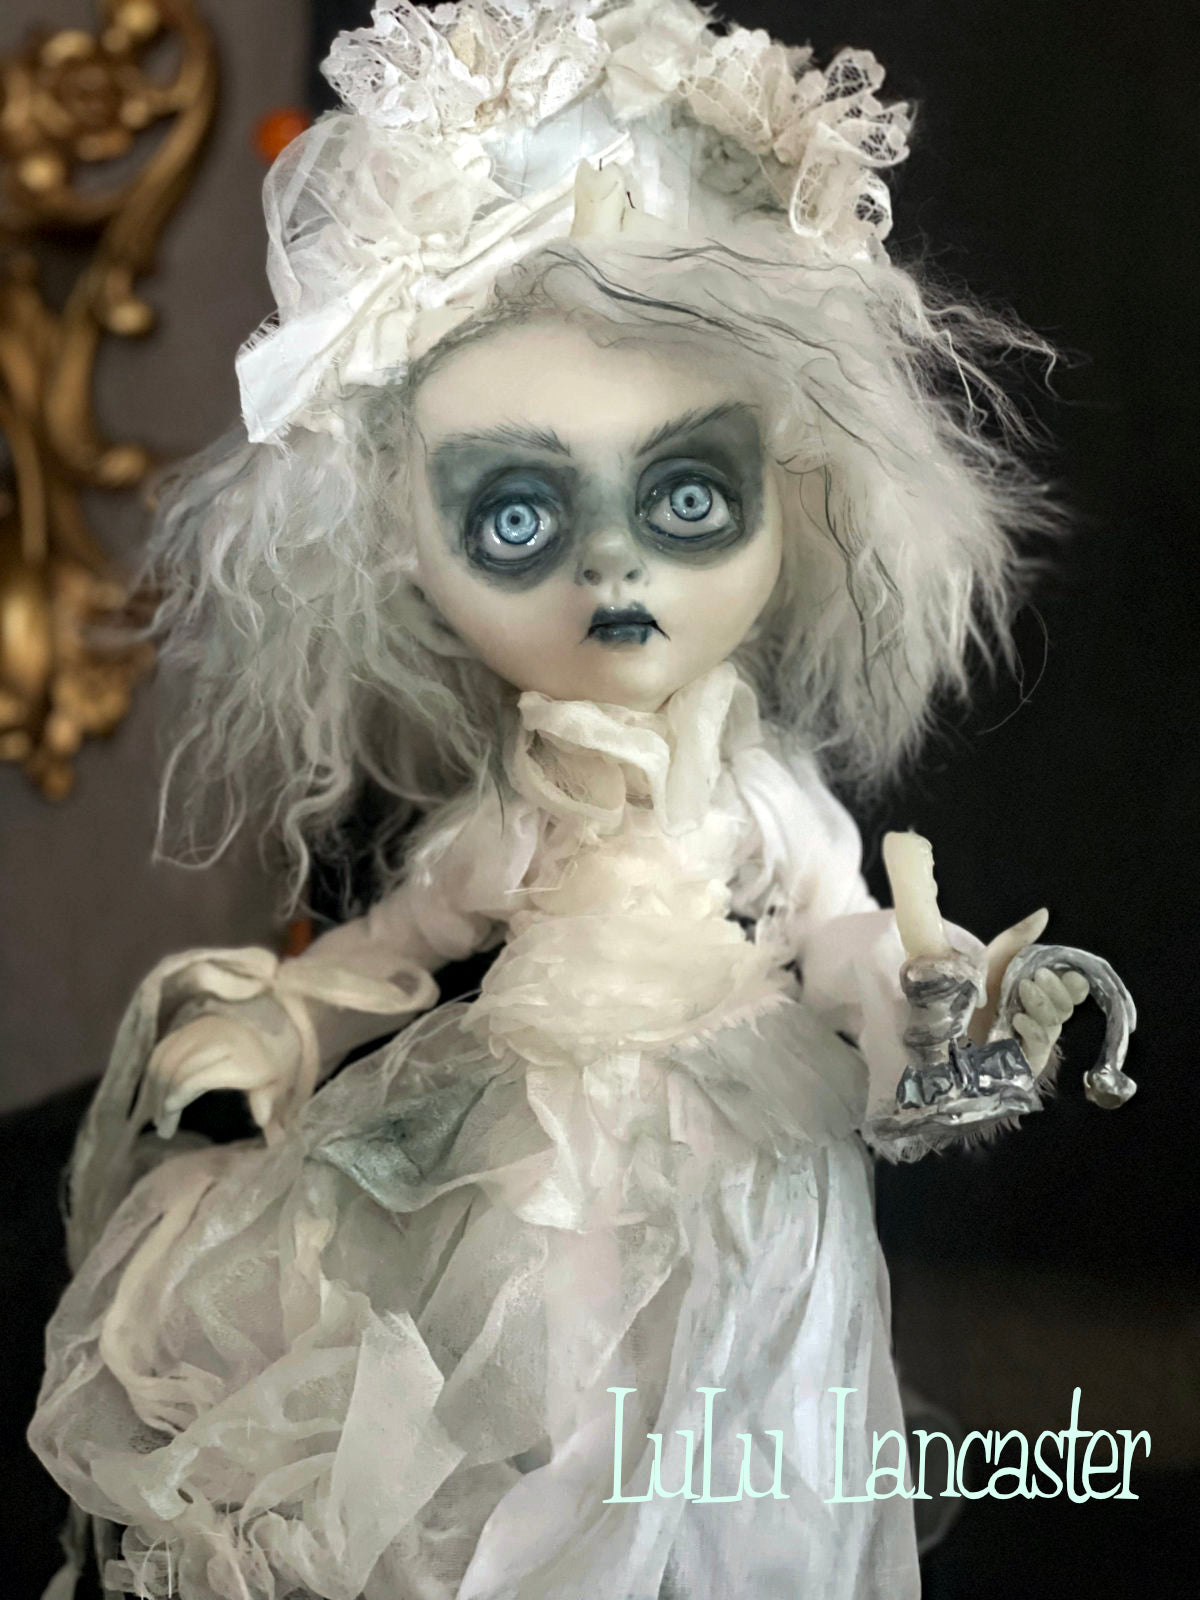 Pleasance Victorian ghostie Original LuLu Lancaster Art Dolls